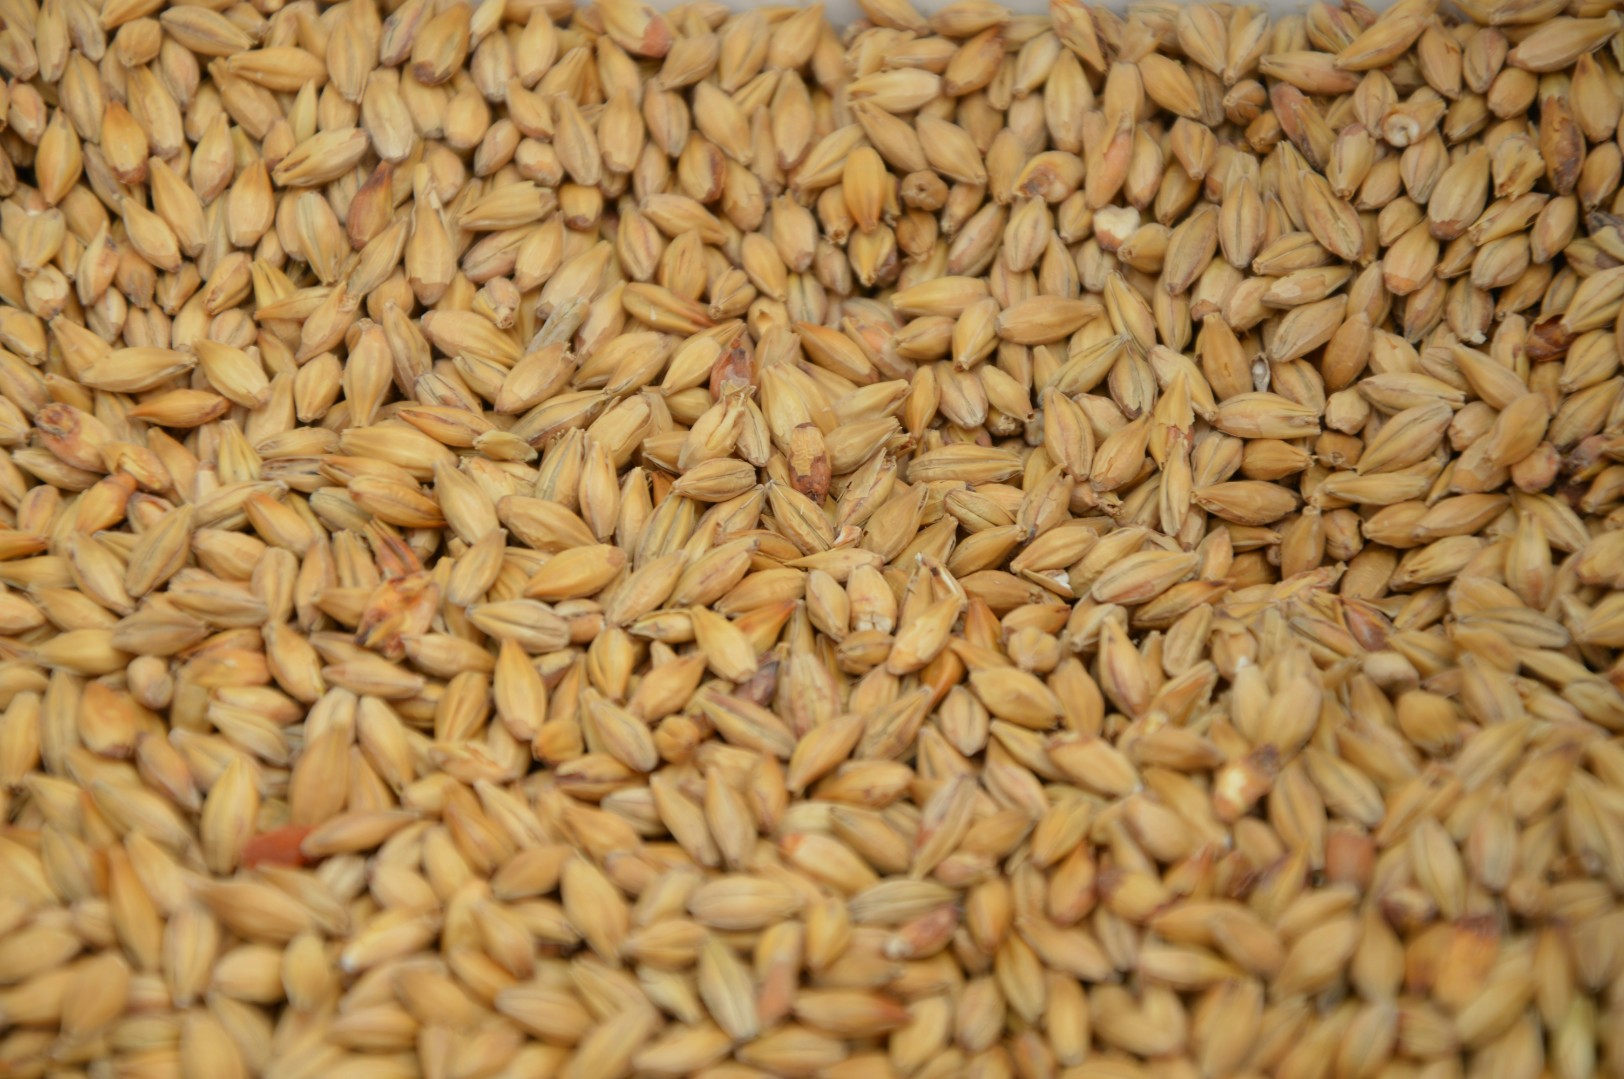 Засуха в южных регионах России может привести к корректировке цен на зерно